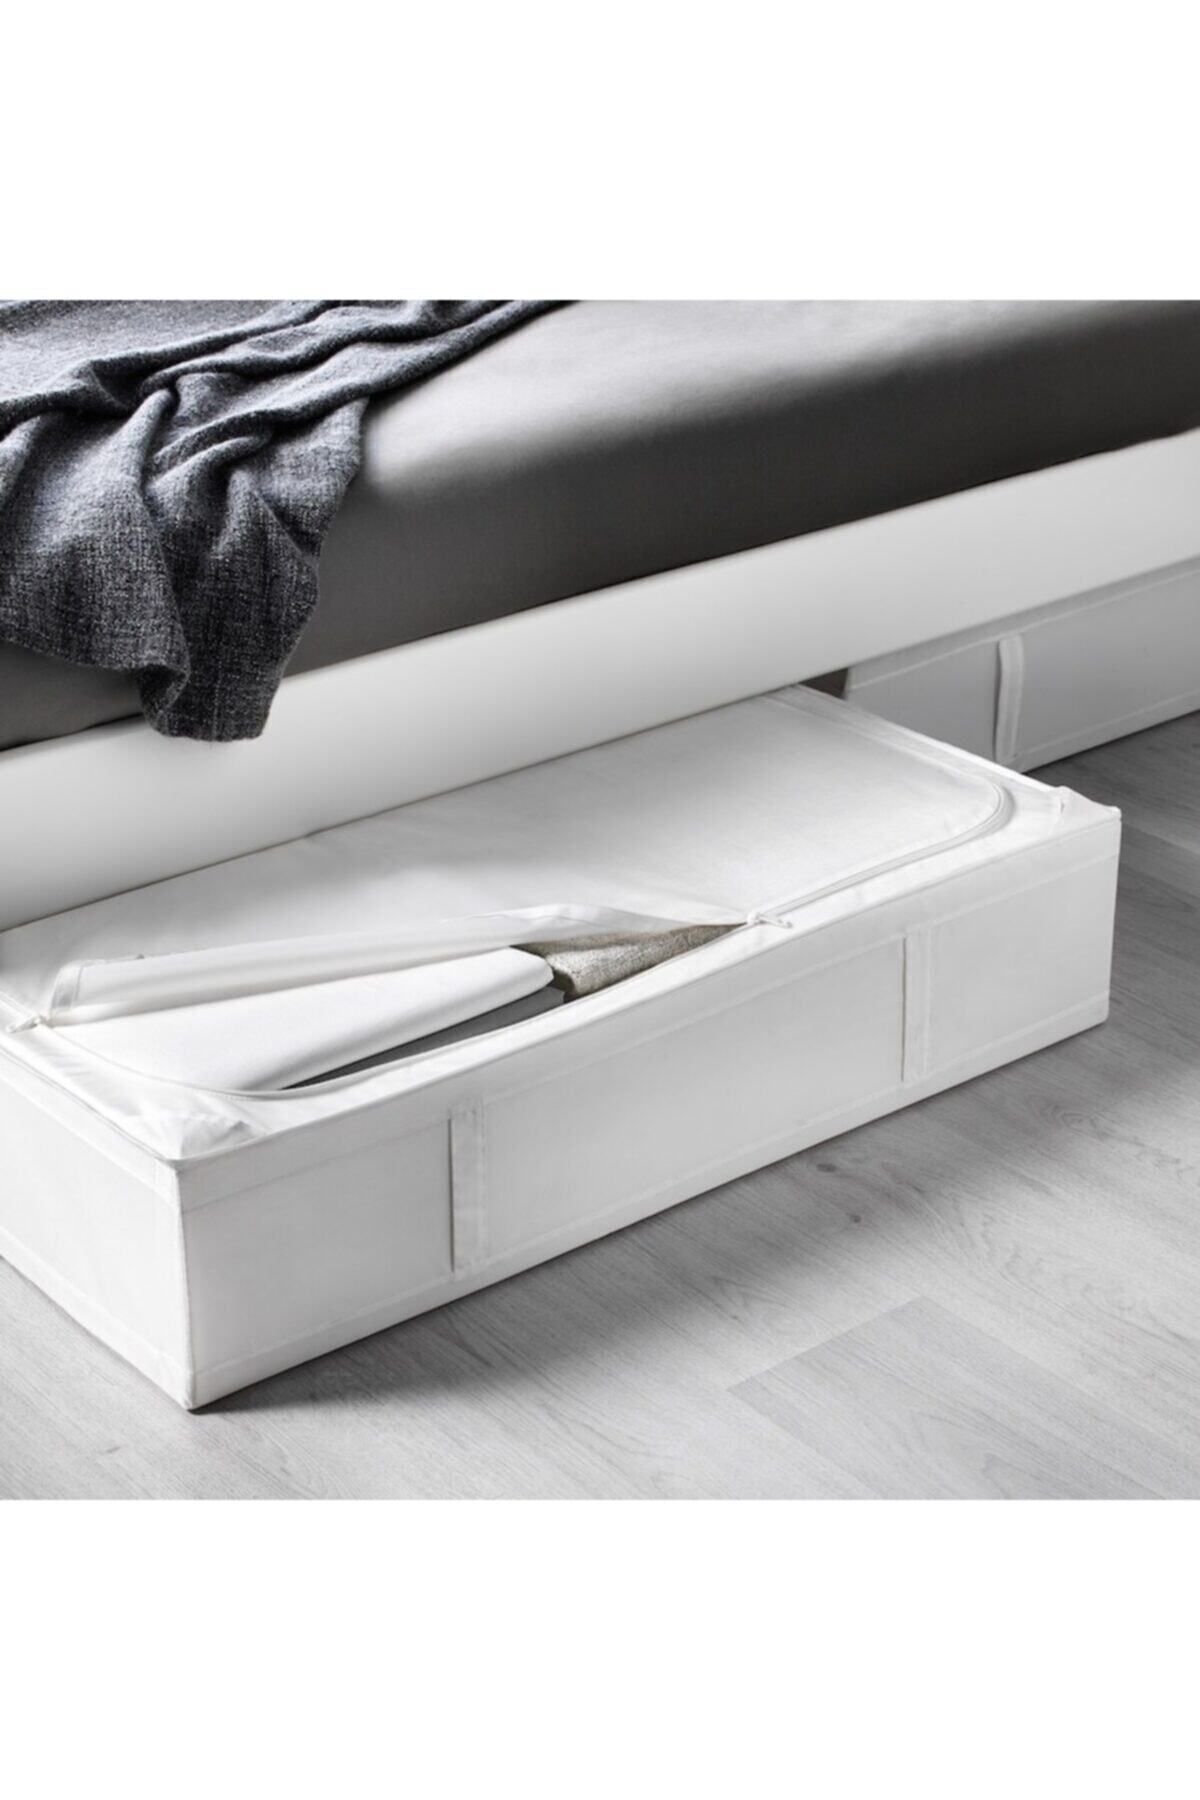 IKEA Skubb 90x53x19 Beyaz Hurç Yatak Altı Yastık Çarşaf Nevresim Giysi Saklama Kutusu Hurç Kutu